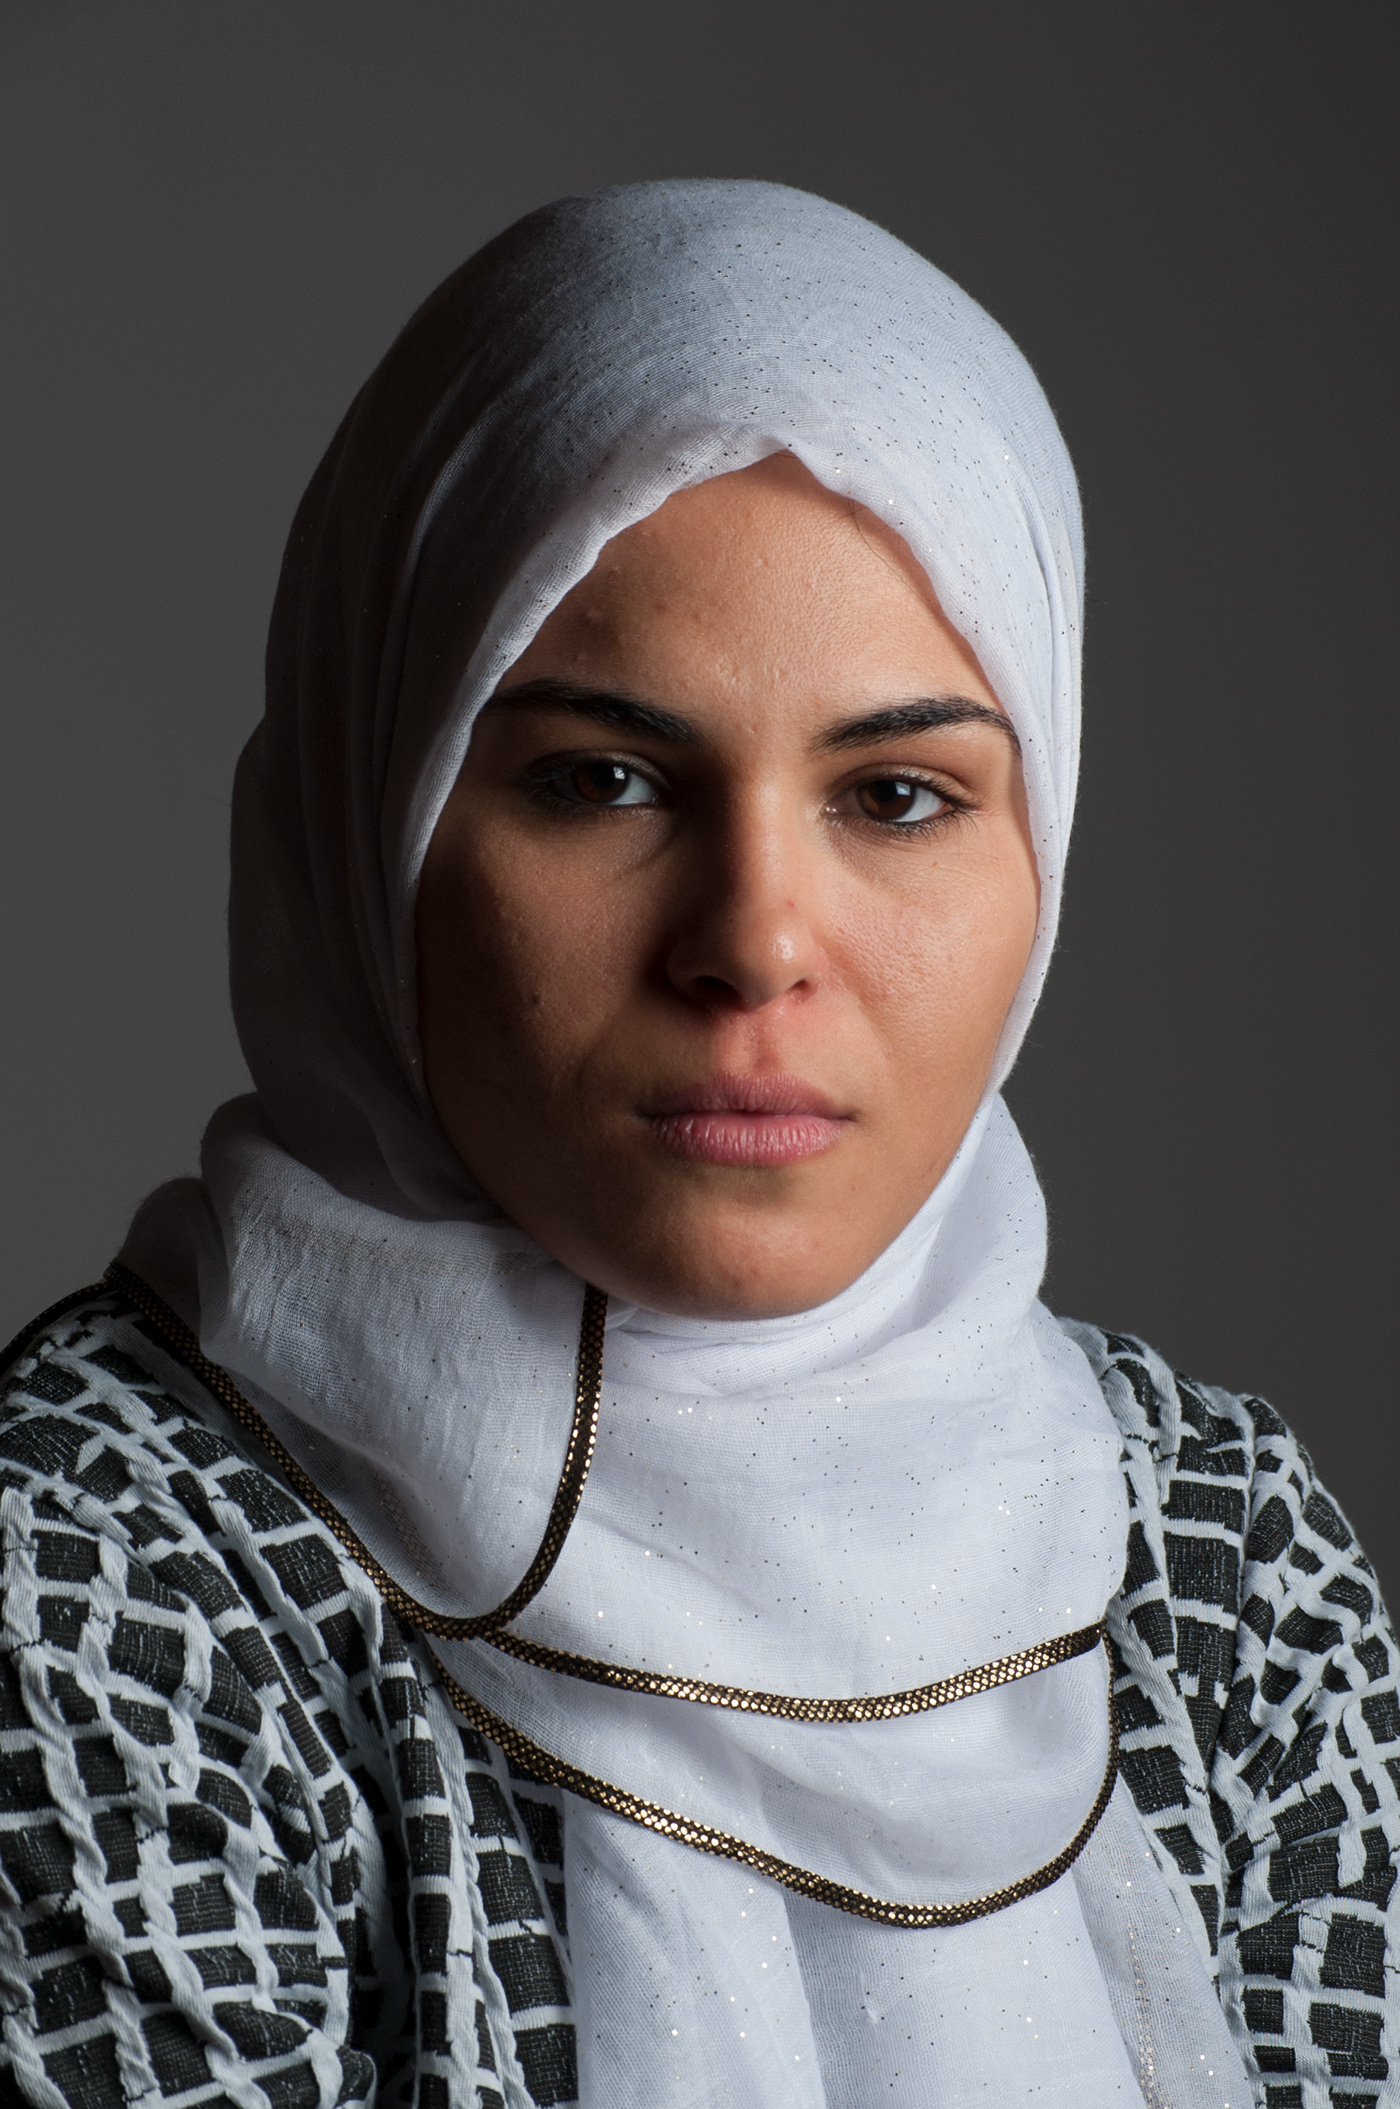 donne editorial hijab model musulmane progetto fotografia RITRATTO ritratto femminile ritratto fotografico velo